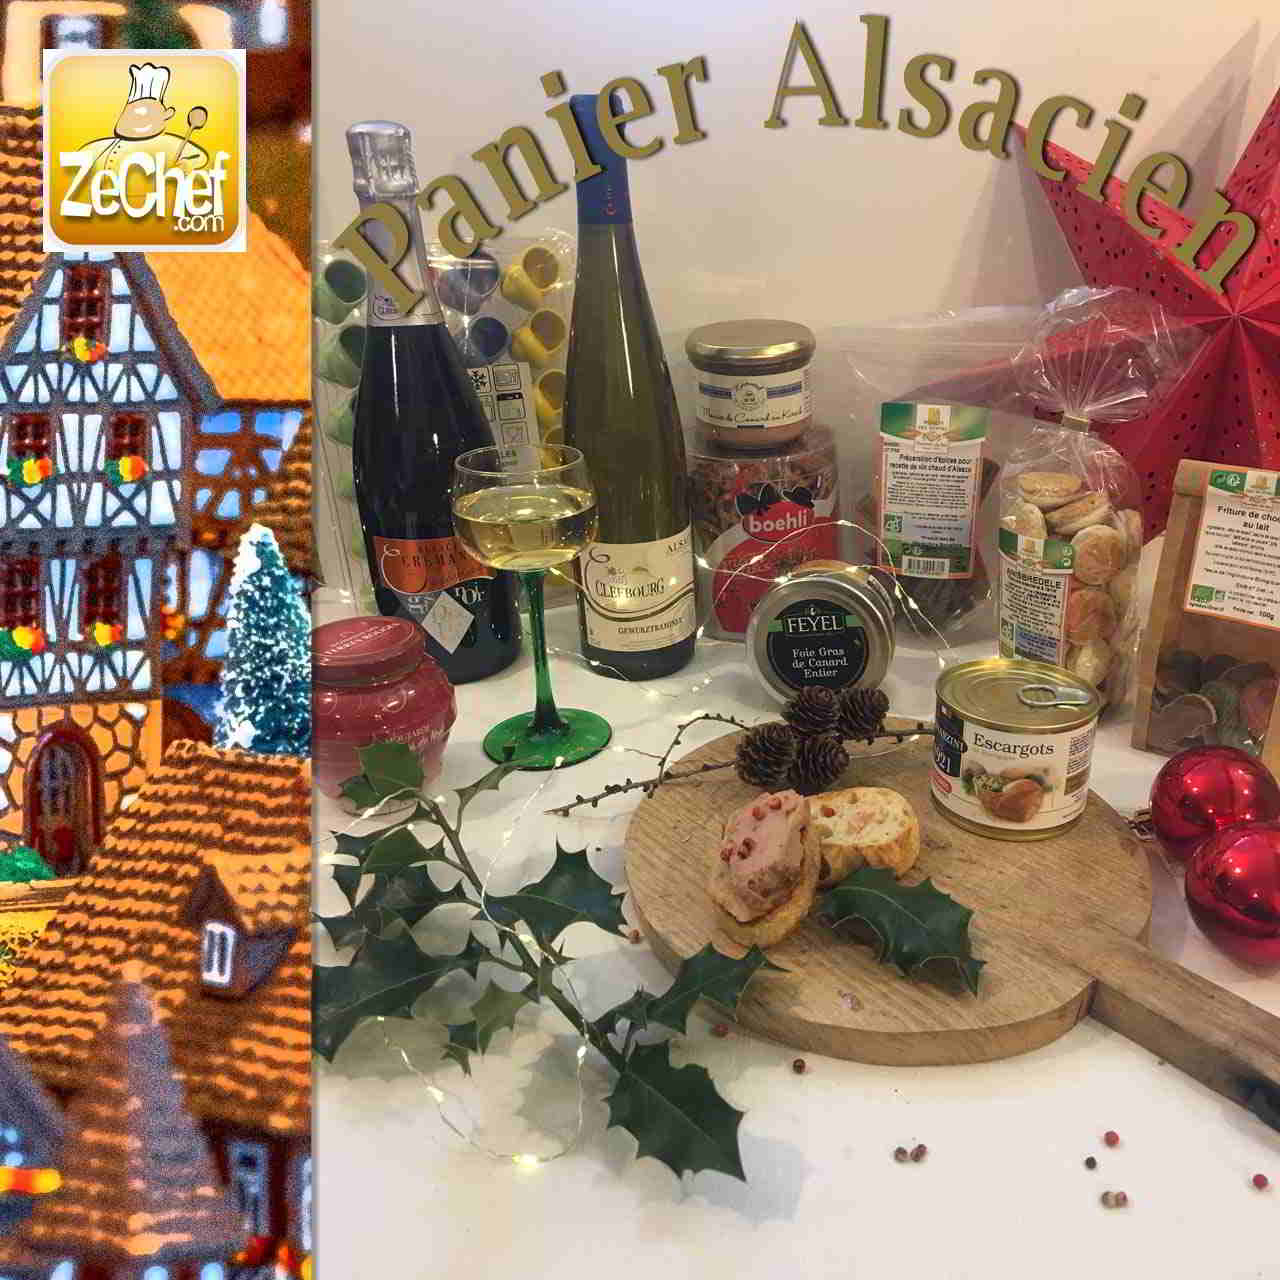 Spécial Noël - Panier Alsacien - Produits du terroir d'Alsace - Zechef la  boutique